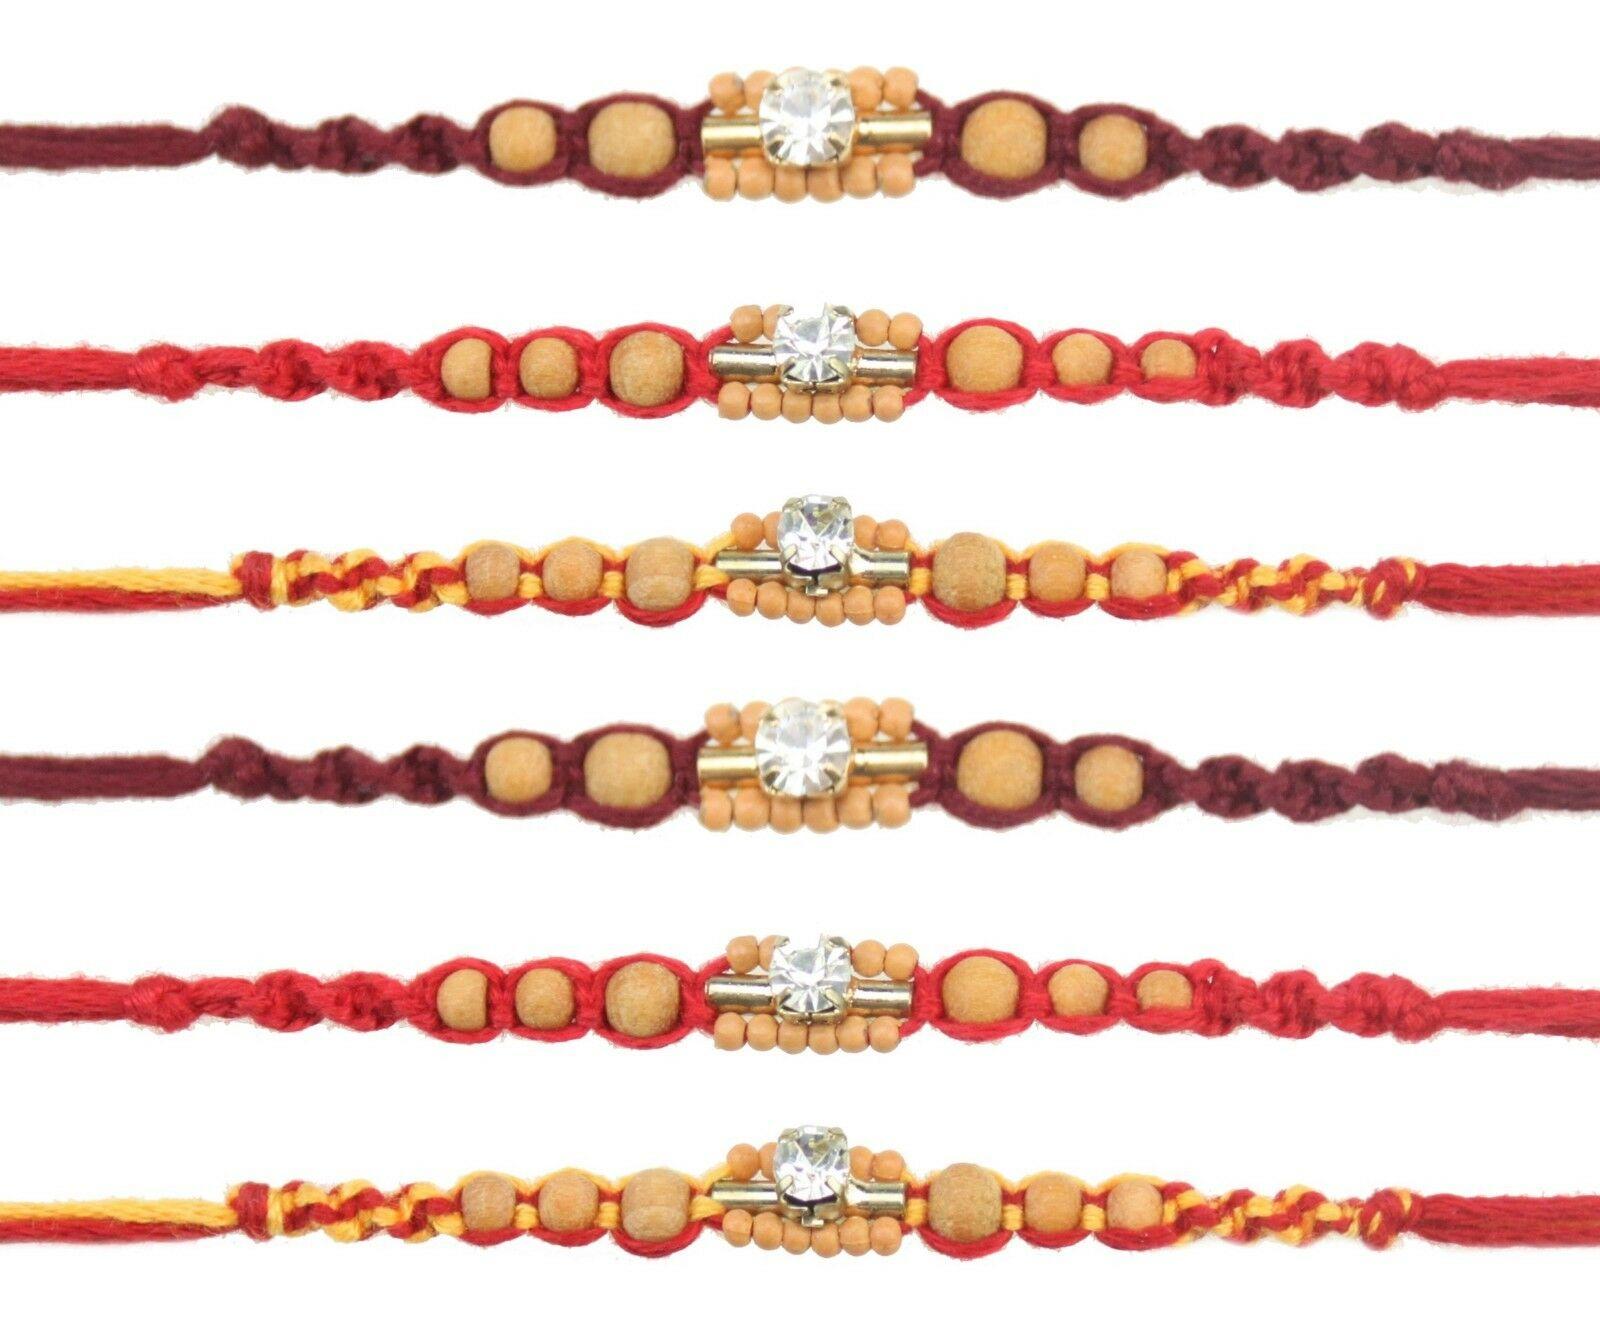 Multi Beads Rakhi Raksha Bandhan Rakhi for Loving Brother Color Vary & Design Om & Dimond Design Rakhi Thread Designed & Assorted Bracelets Set of Two Rakhi 